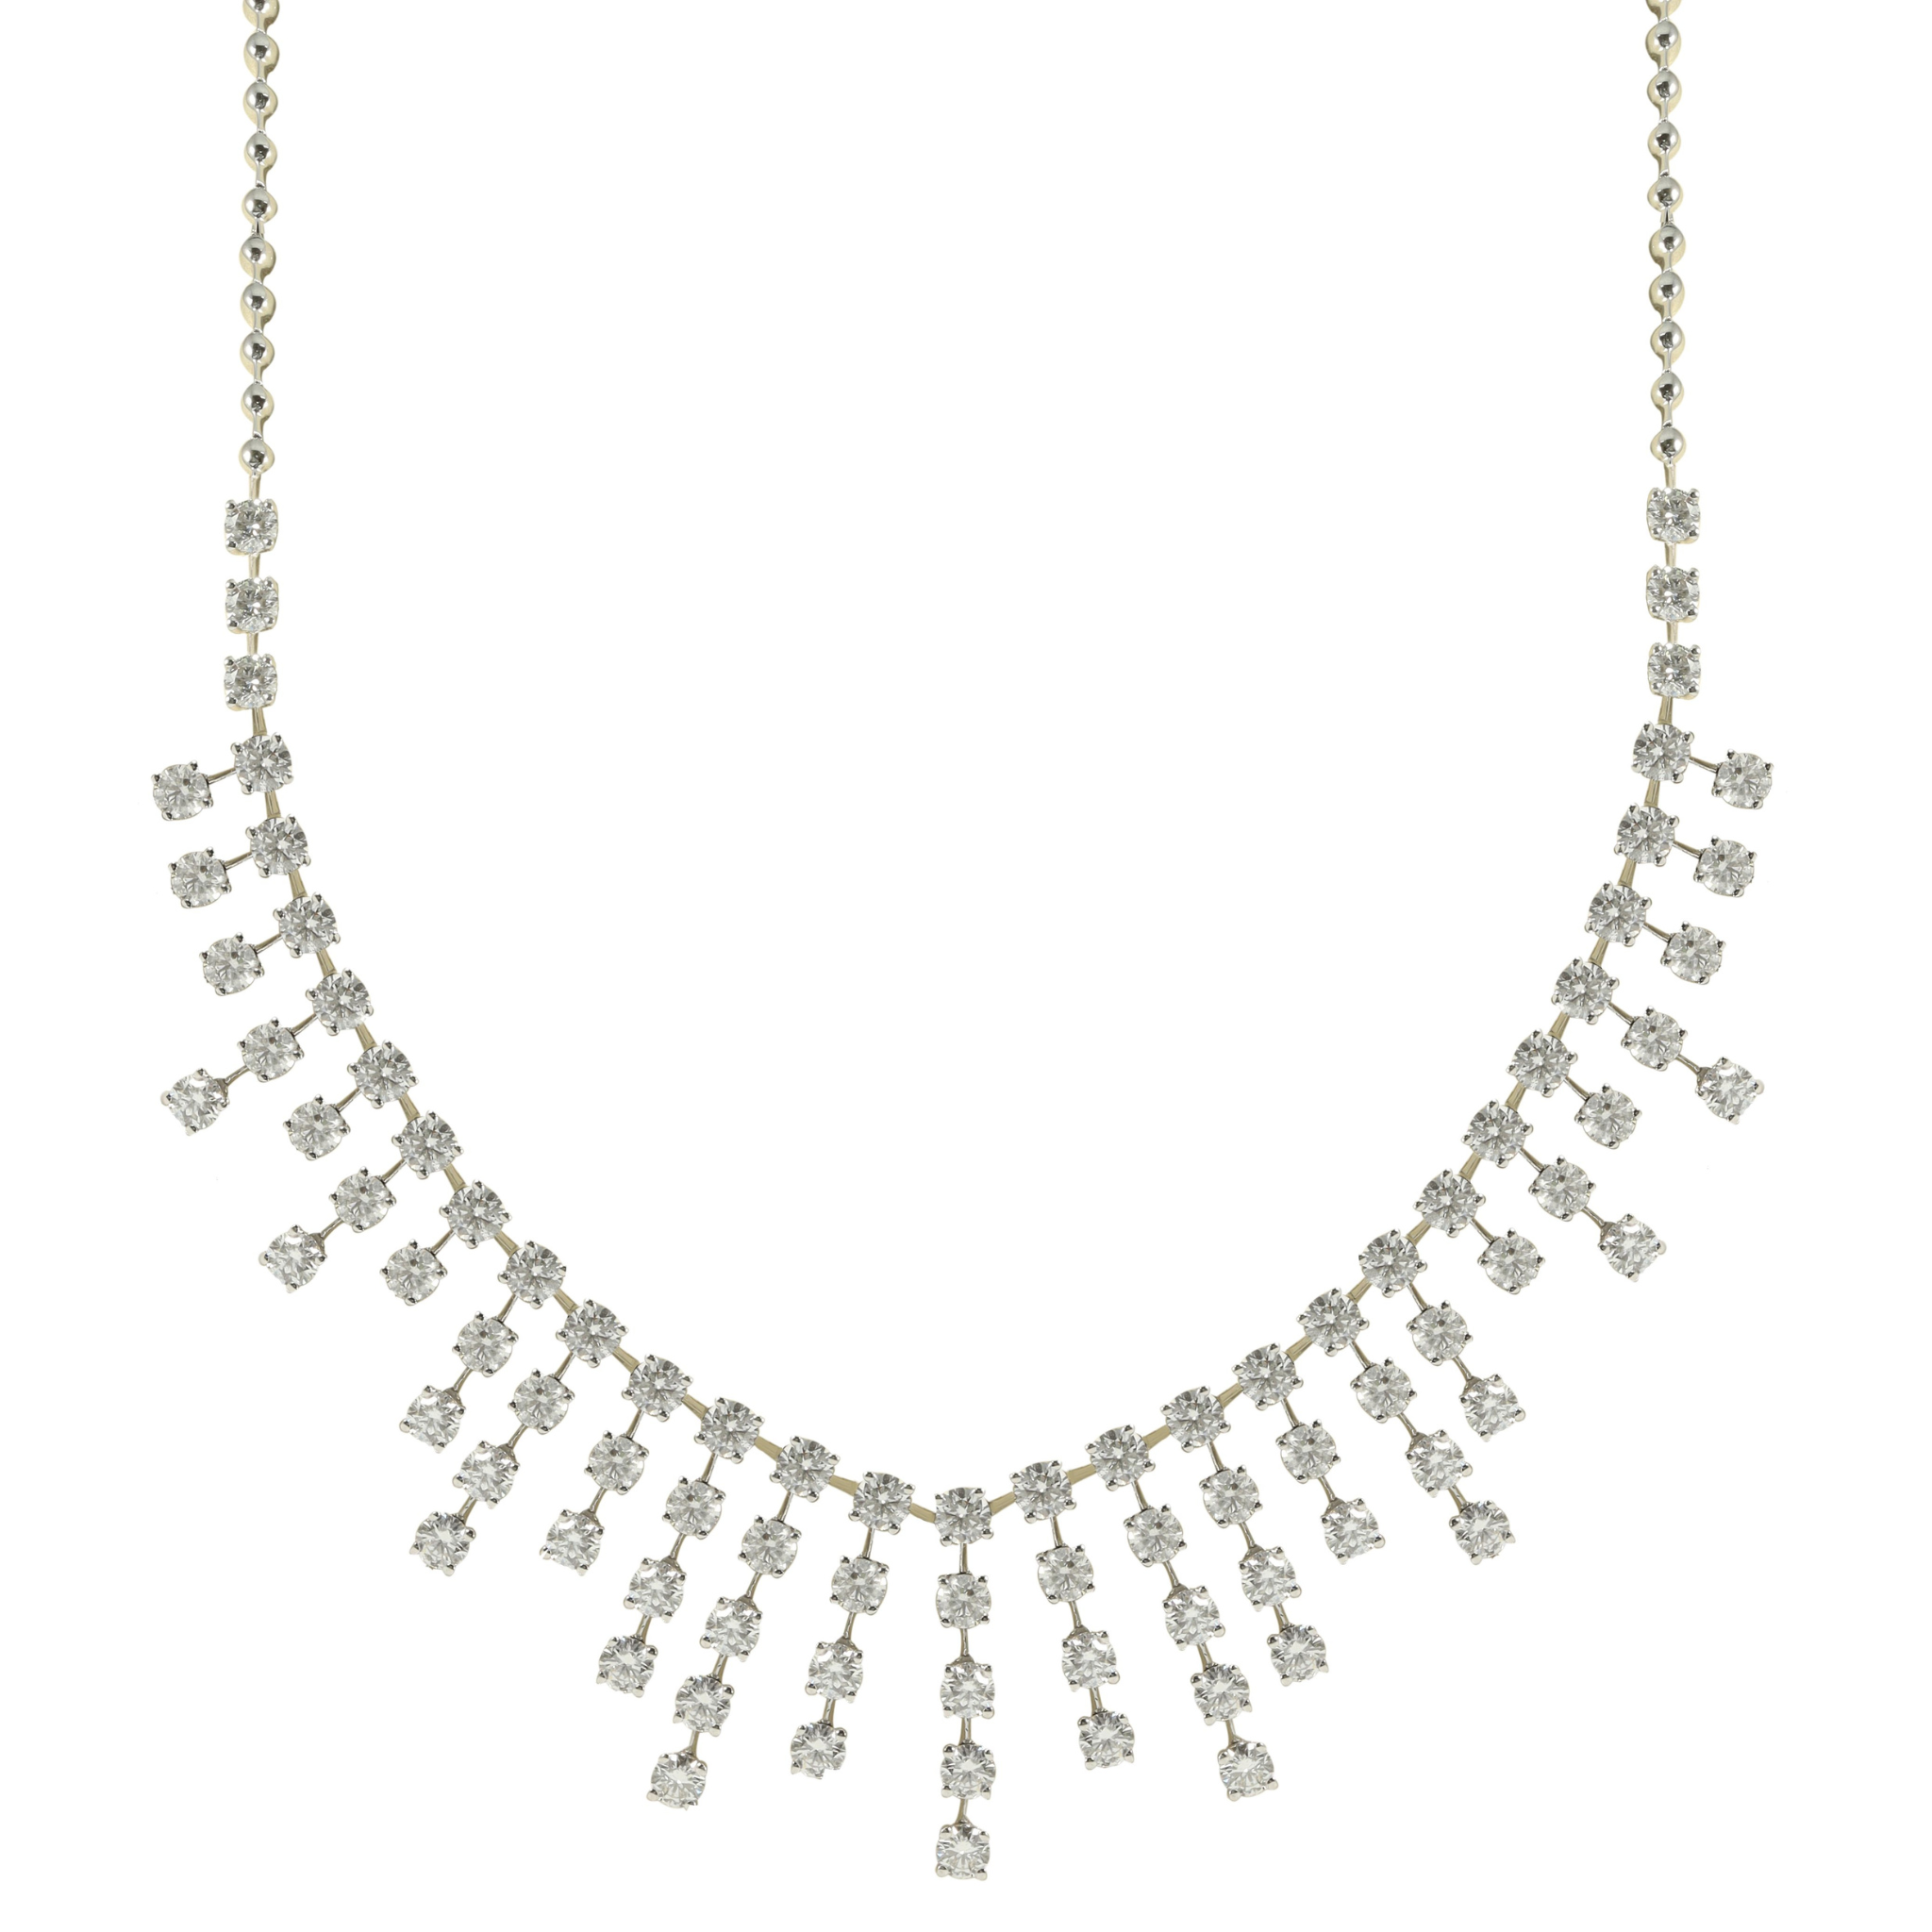 15.84ct Diamond Necklace.jpg